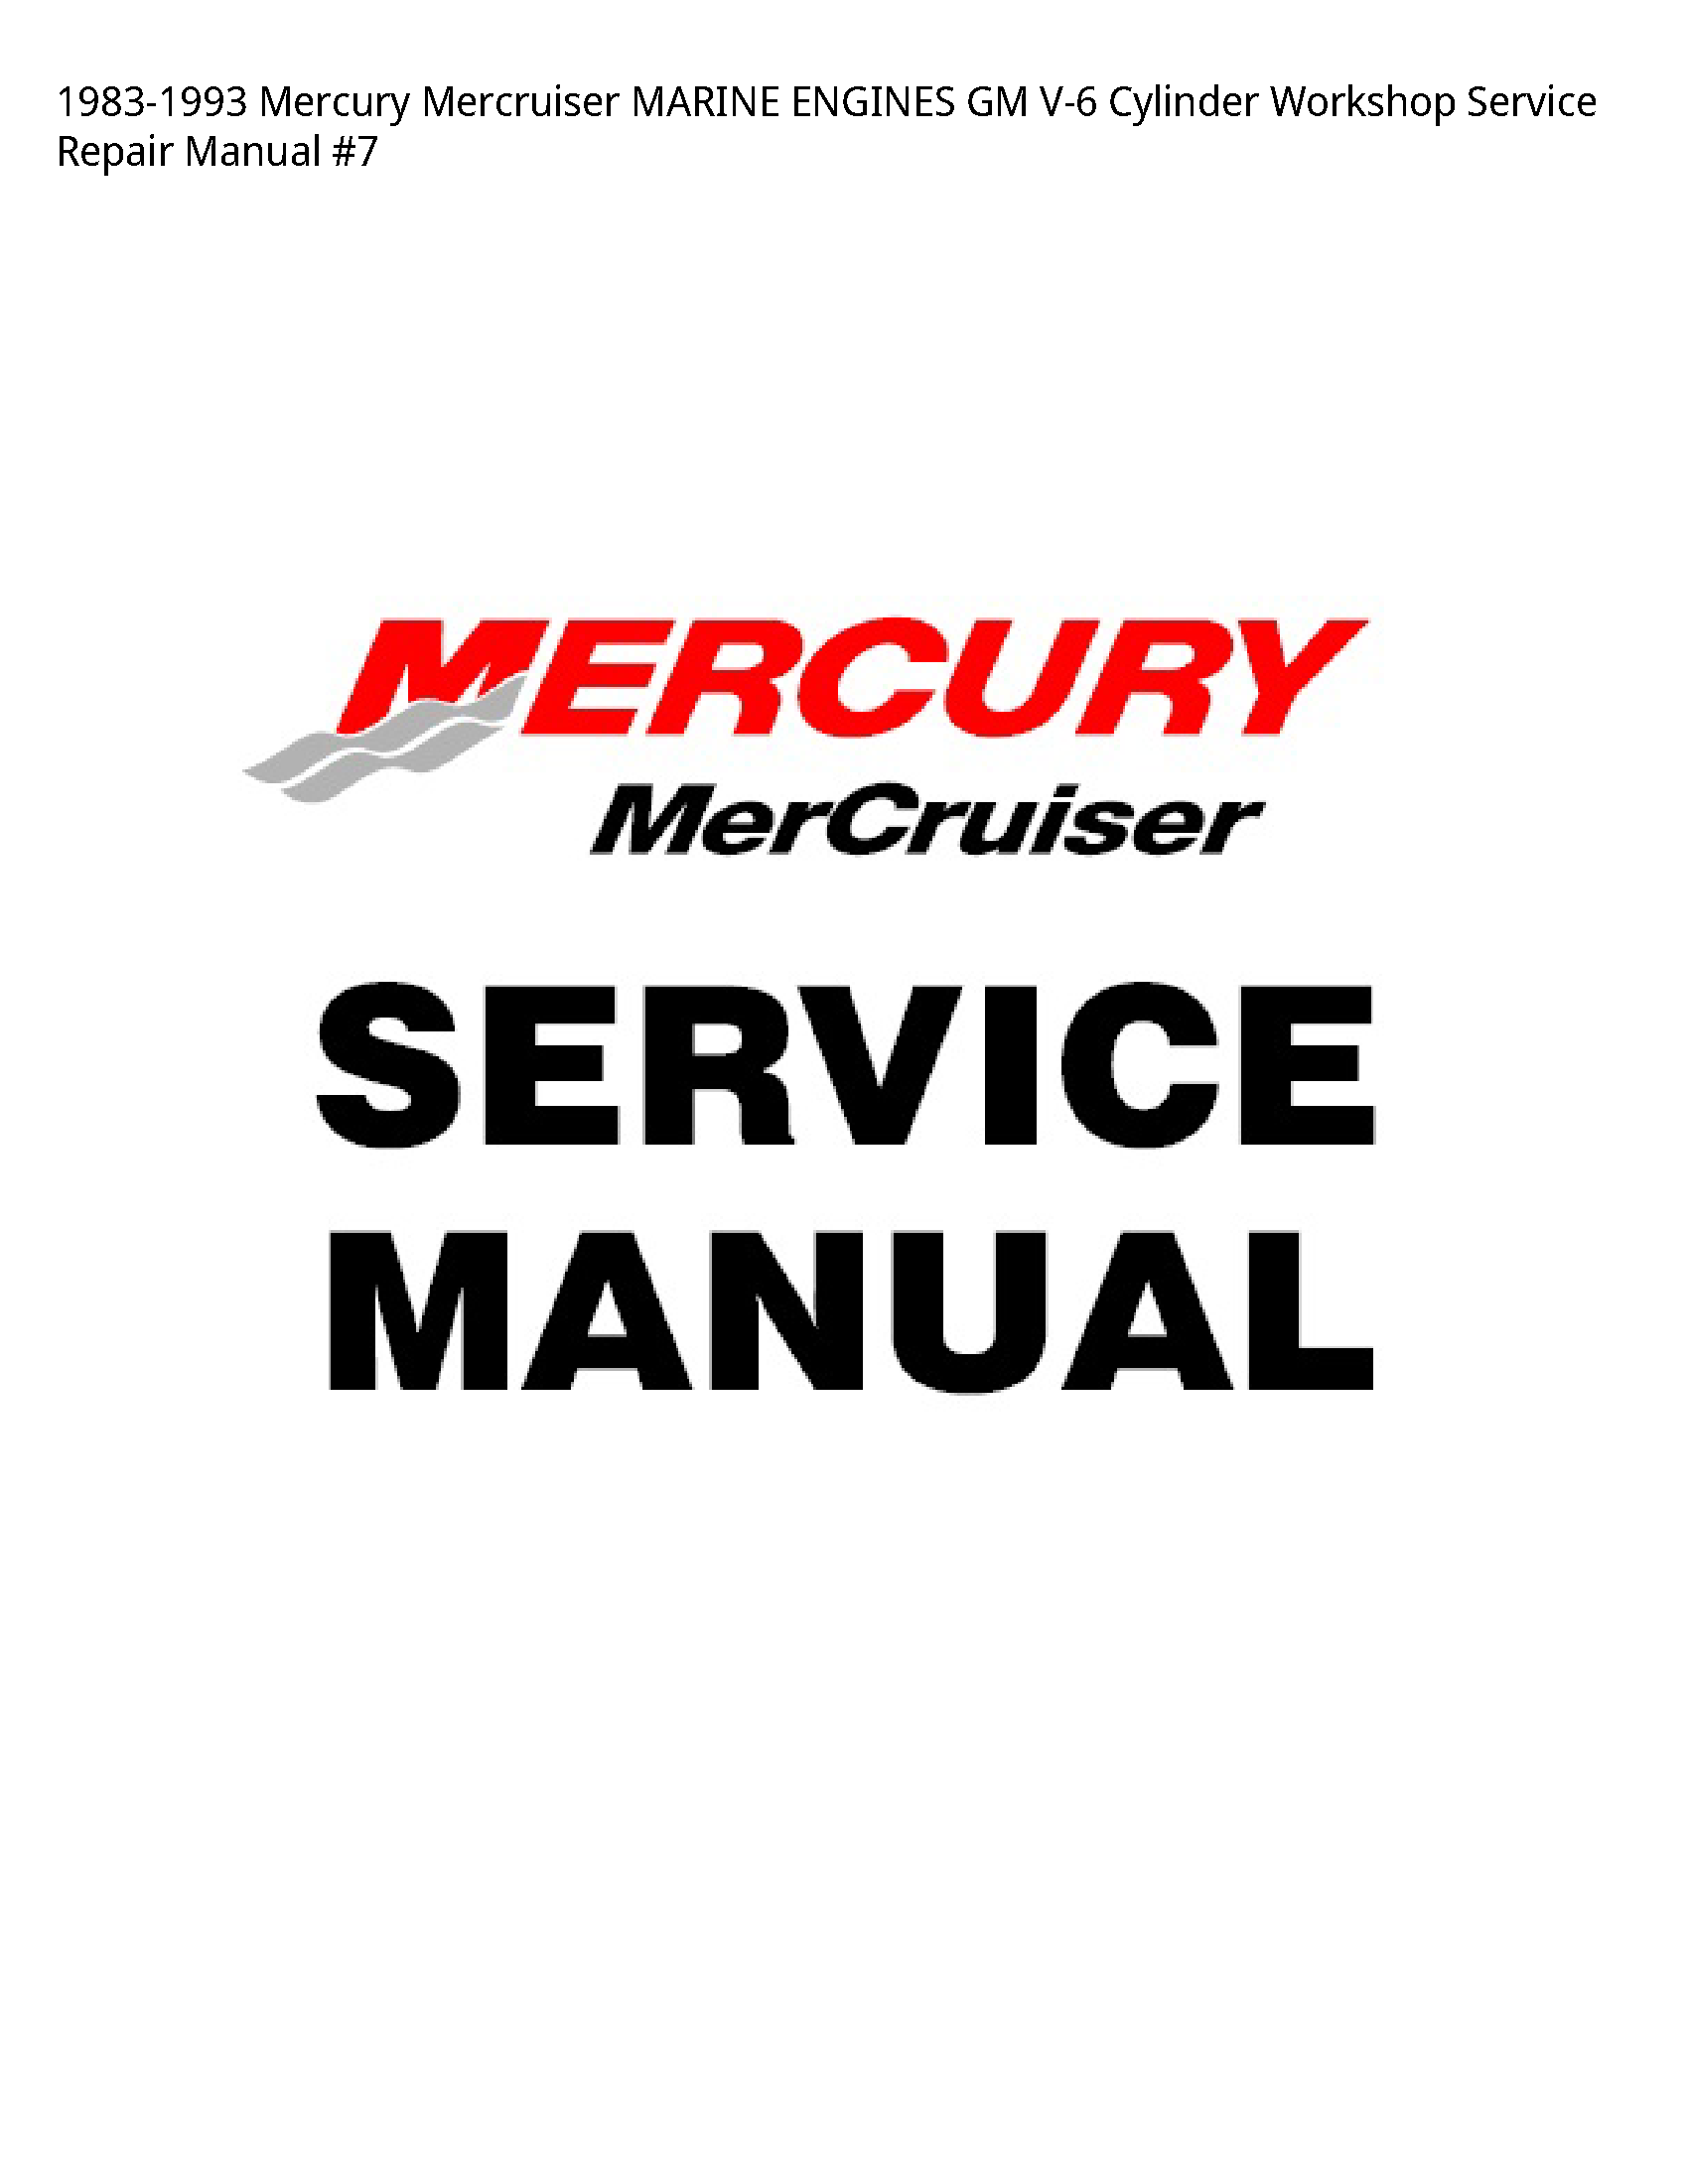 Mercury V-6 Mercruiser MARINE ENGINES GM Cylinder manual